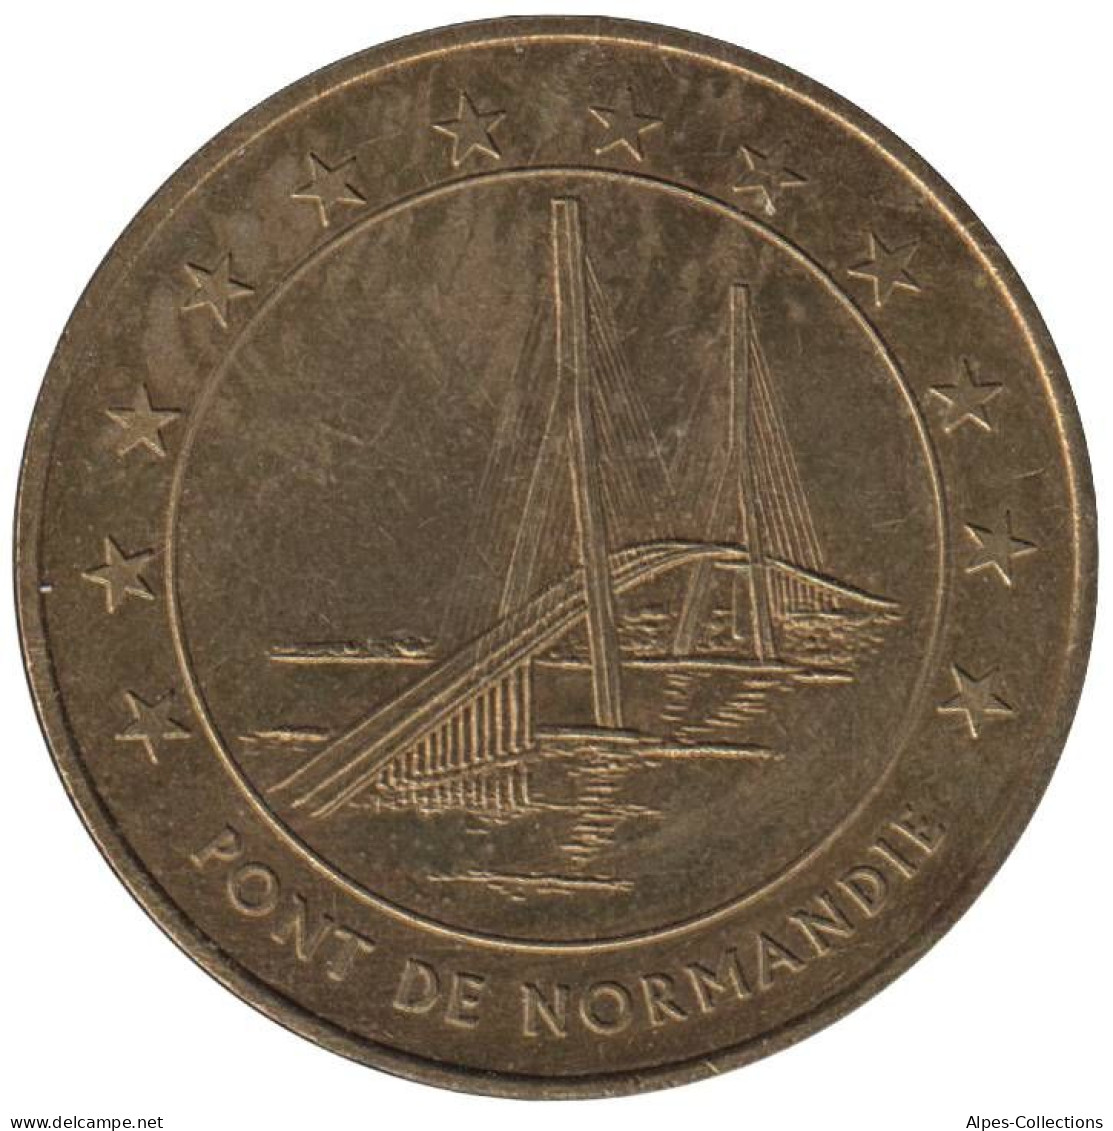 LE HAVRE - EU0010.2 - 1 EURO DES VILLES - Réf: T176 - 1996 - Euros Of The Cities